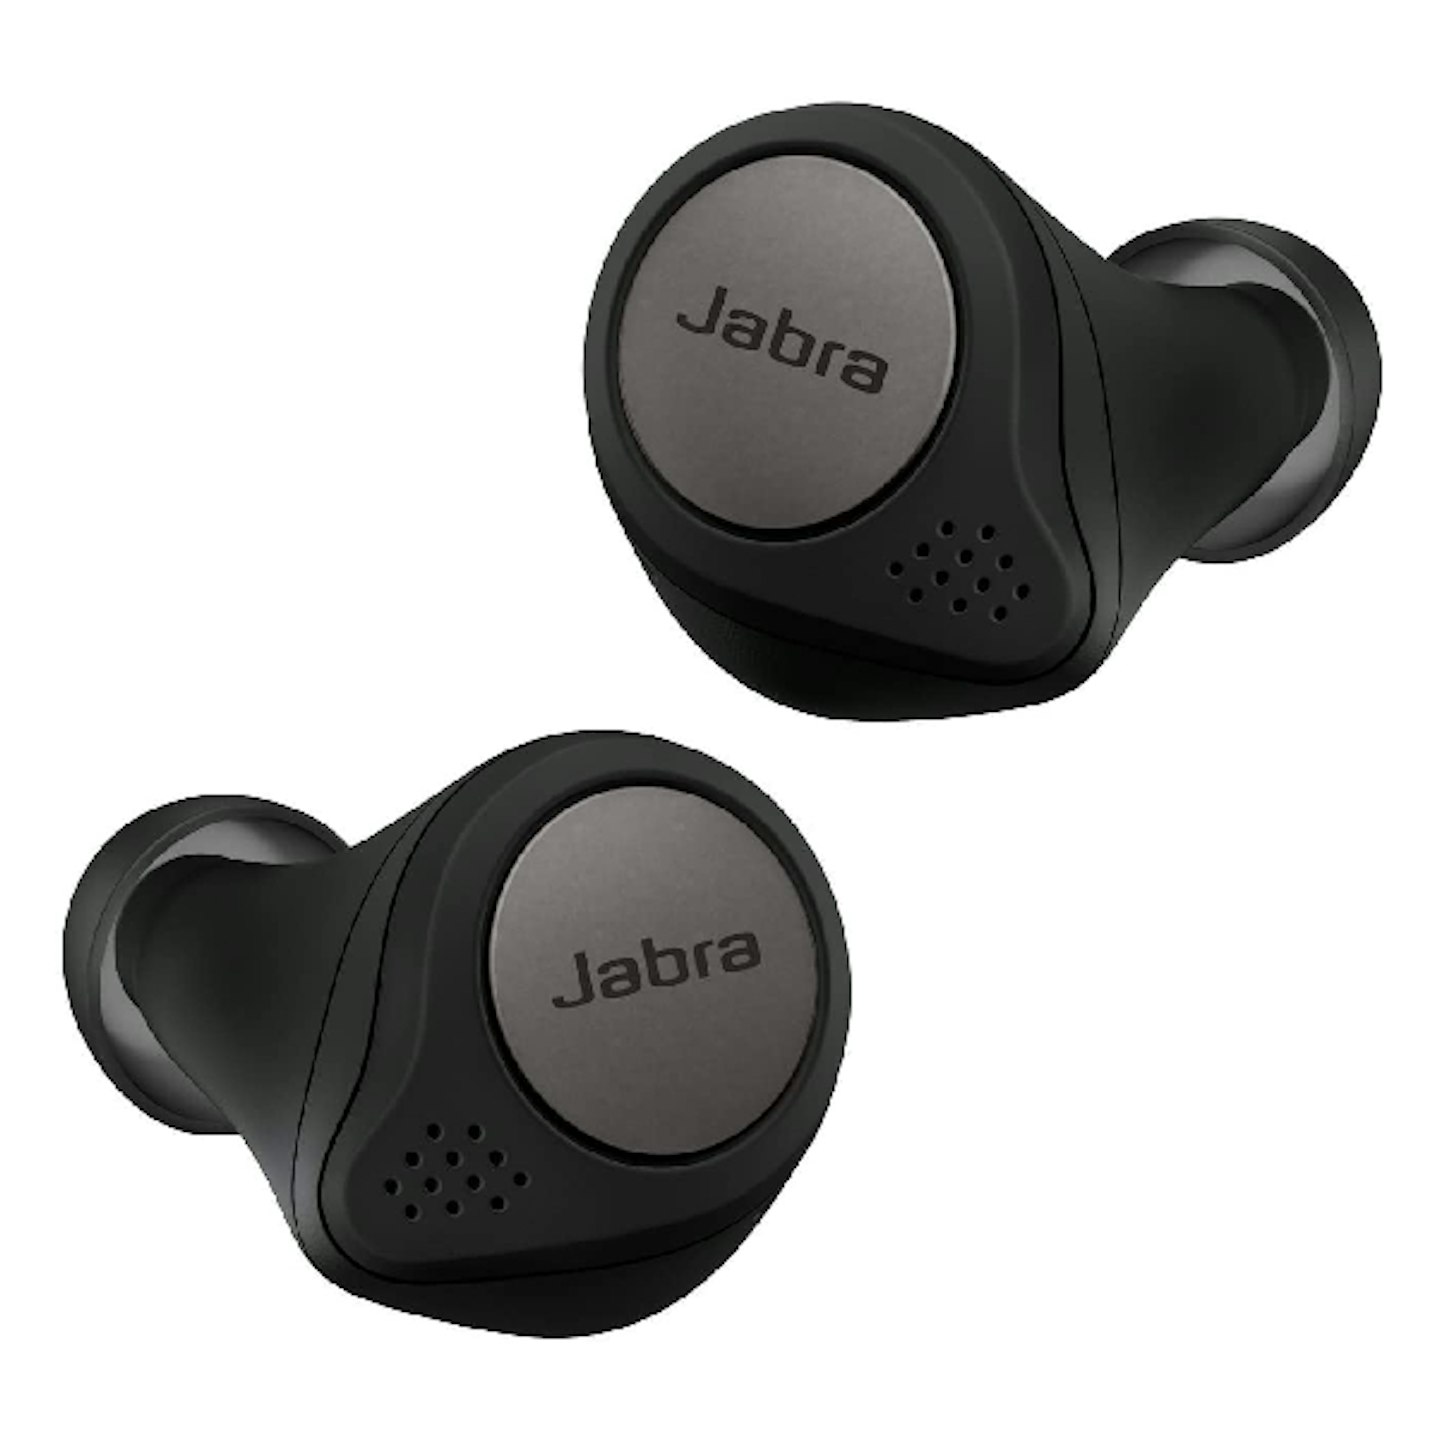 Jabra waterproof headphones